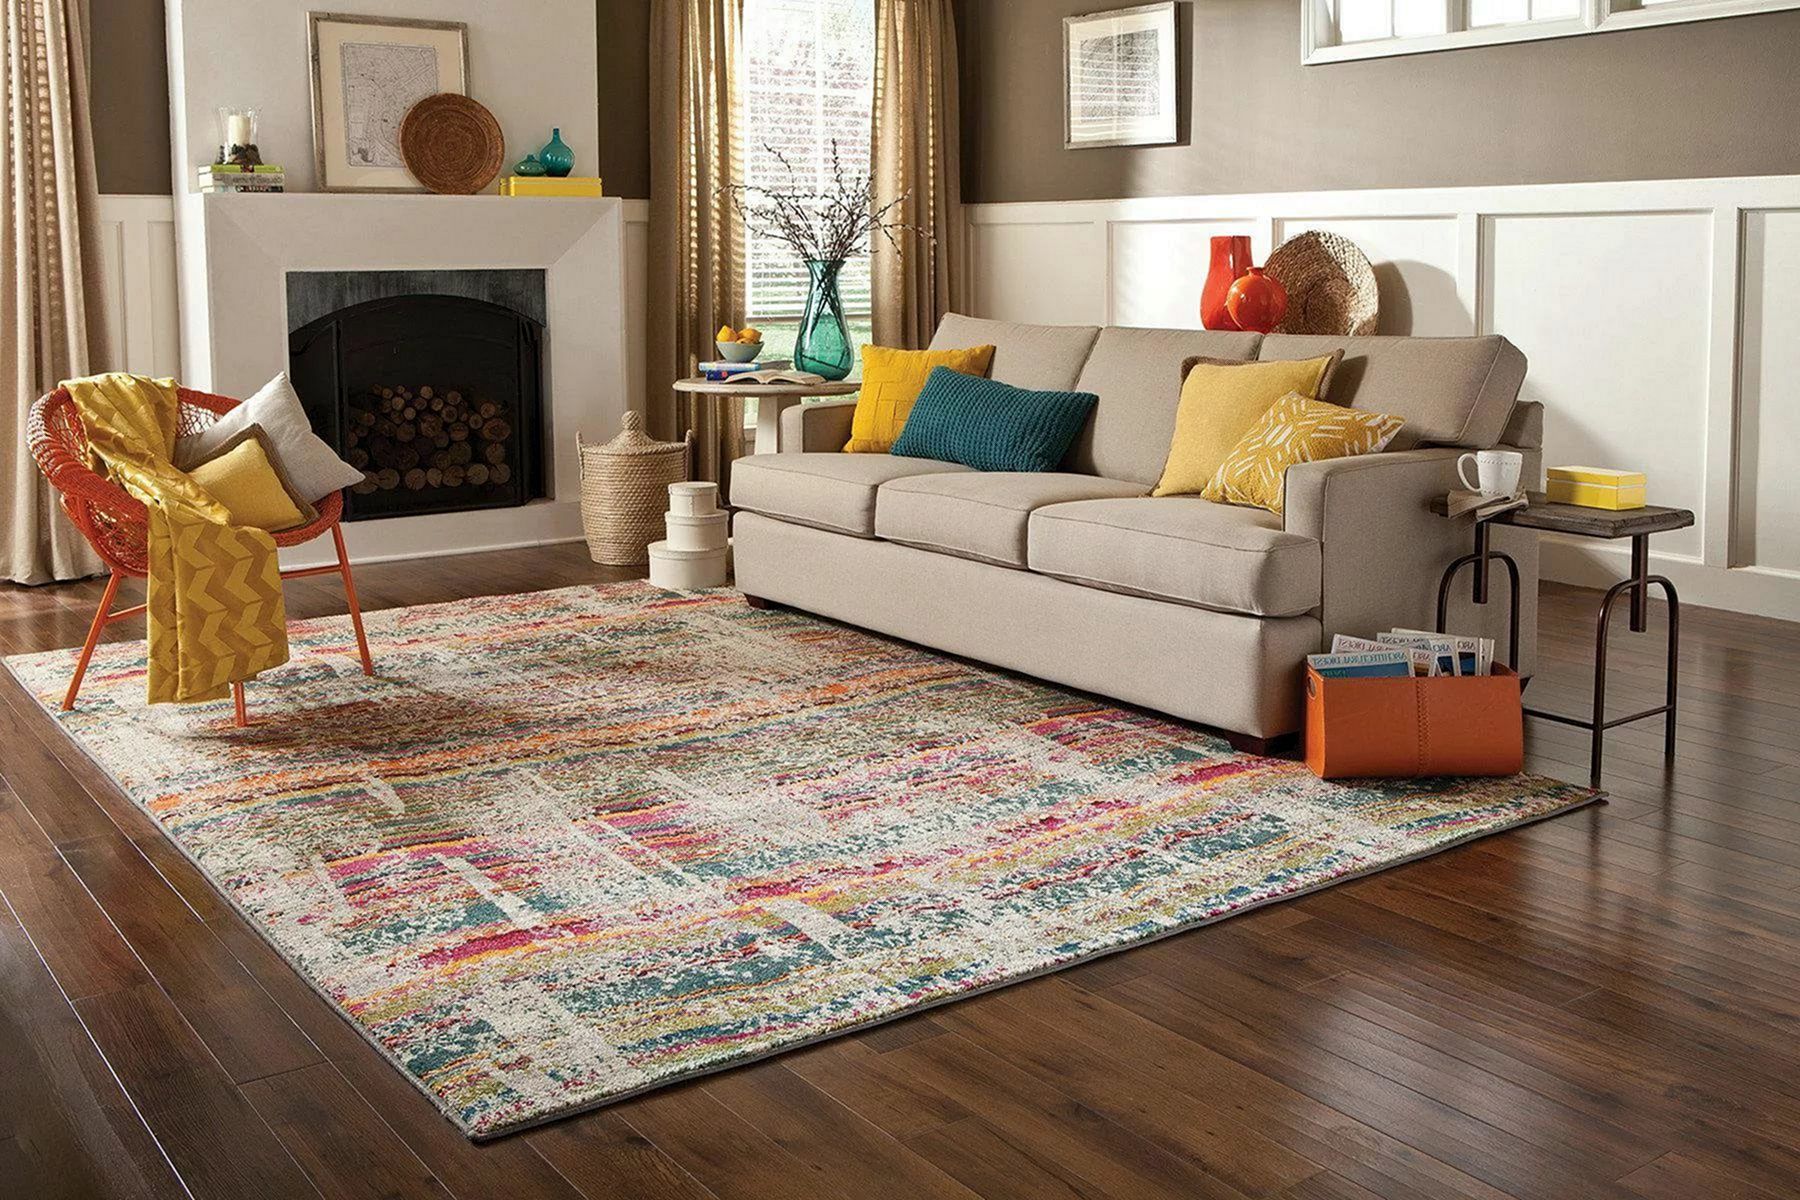 Lovely Living Room Carpet Ideas